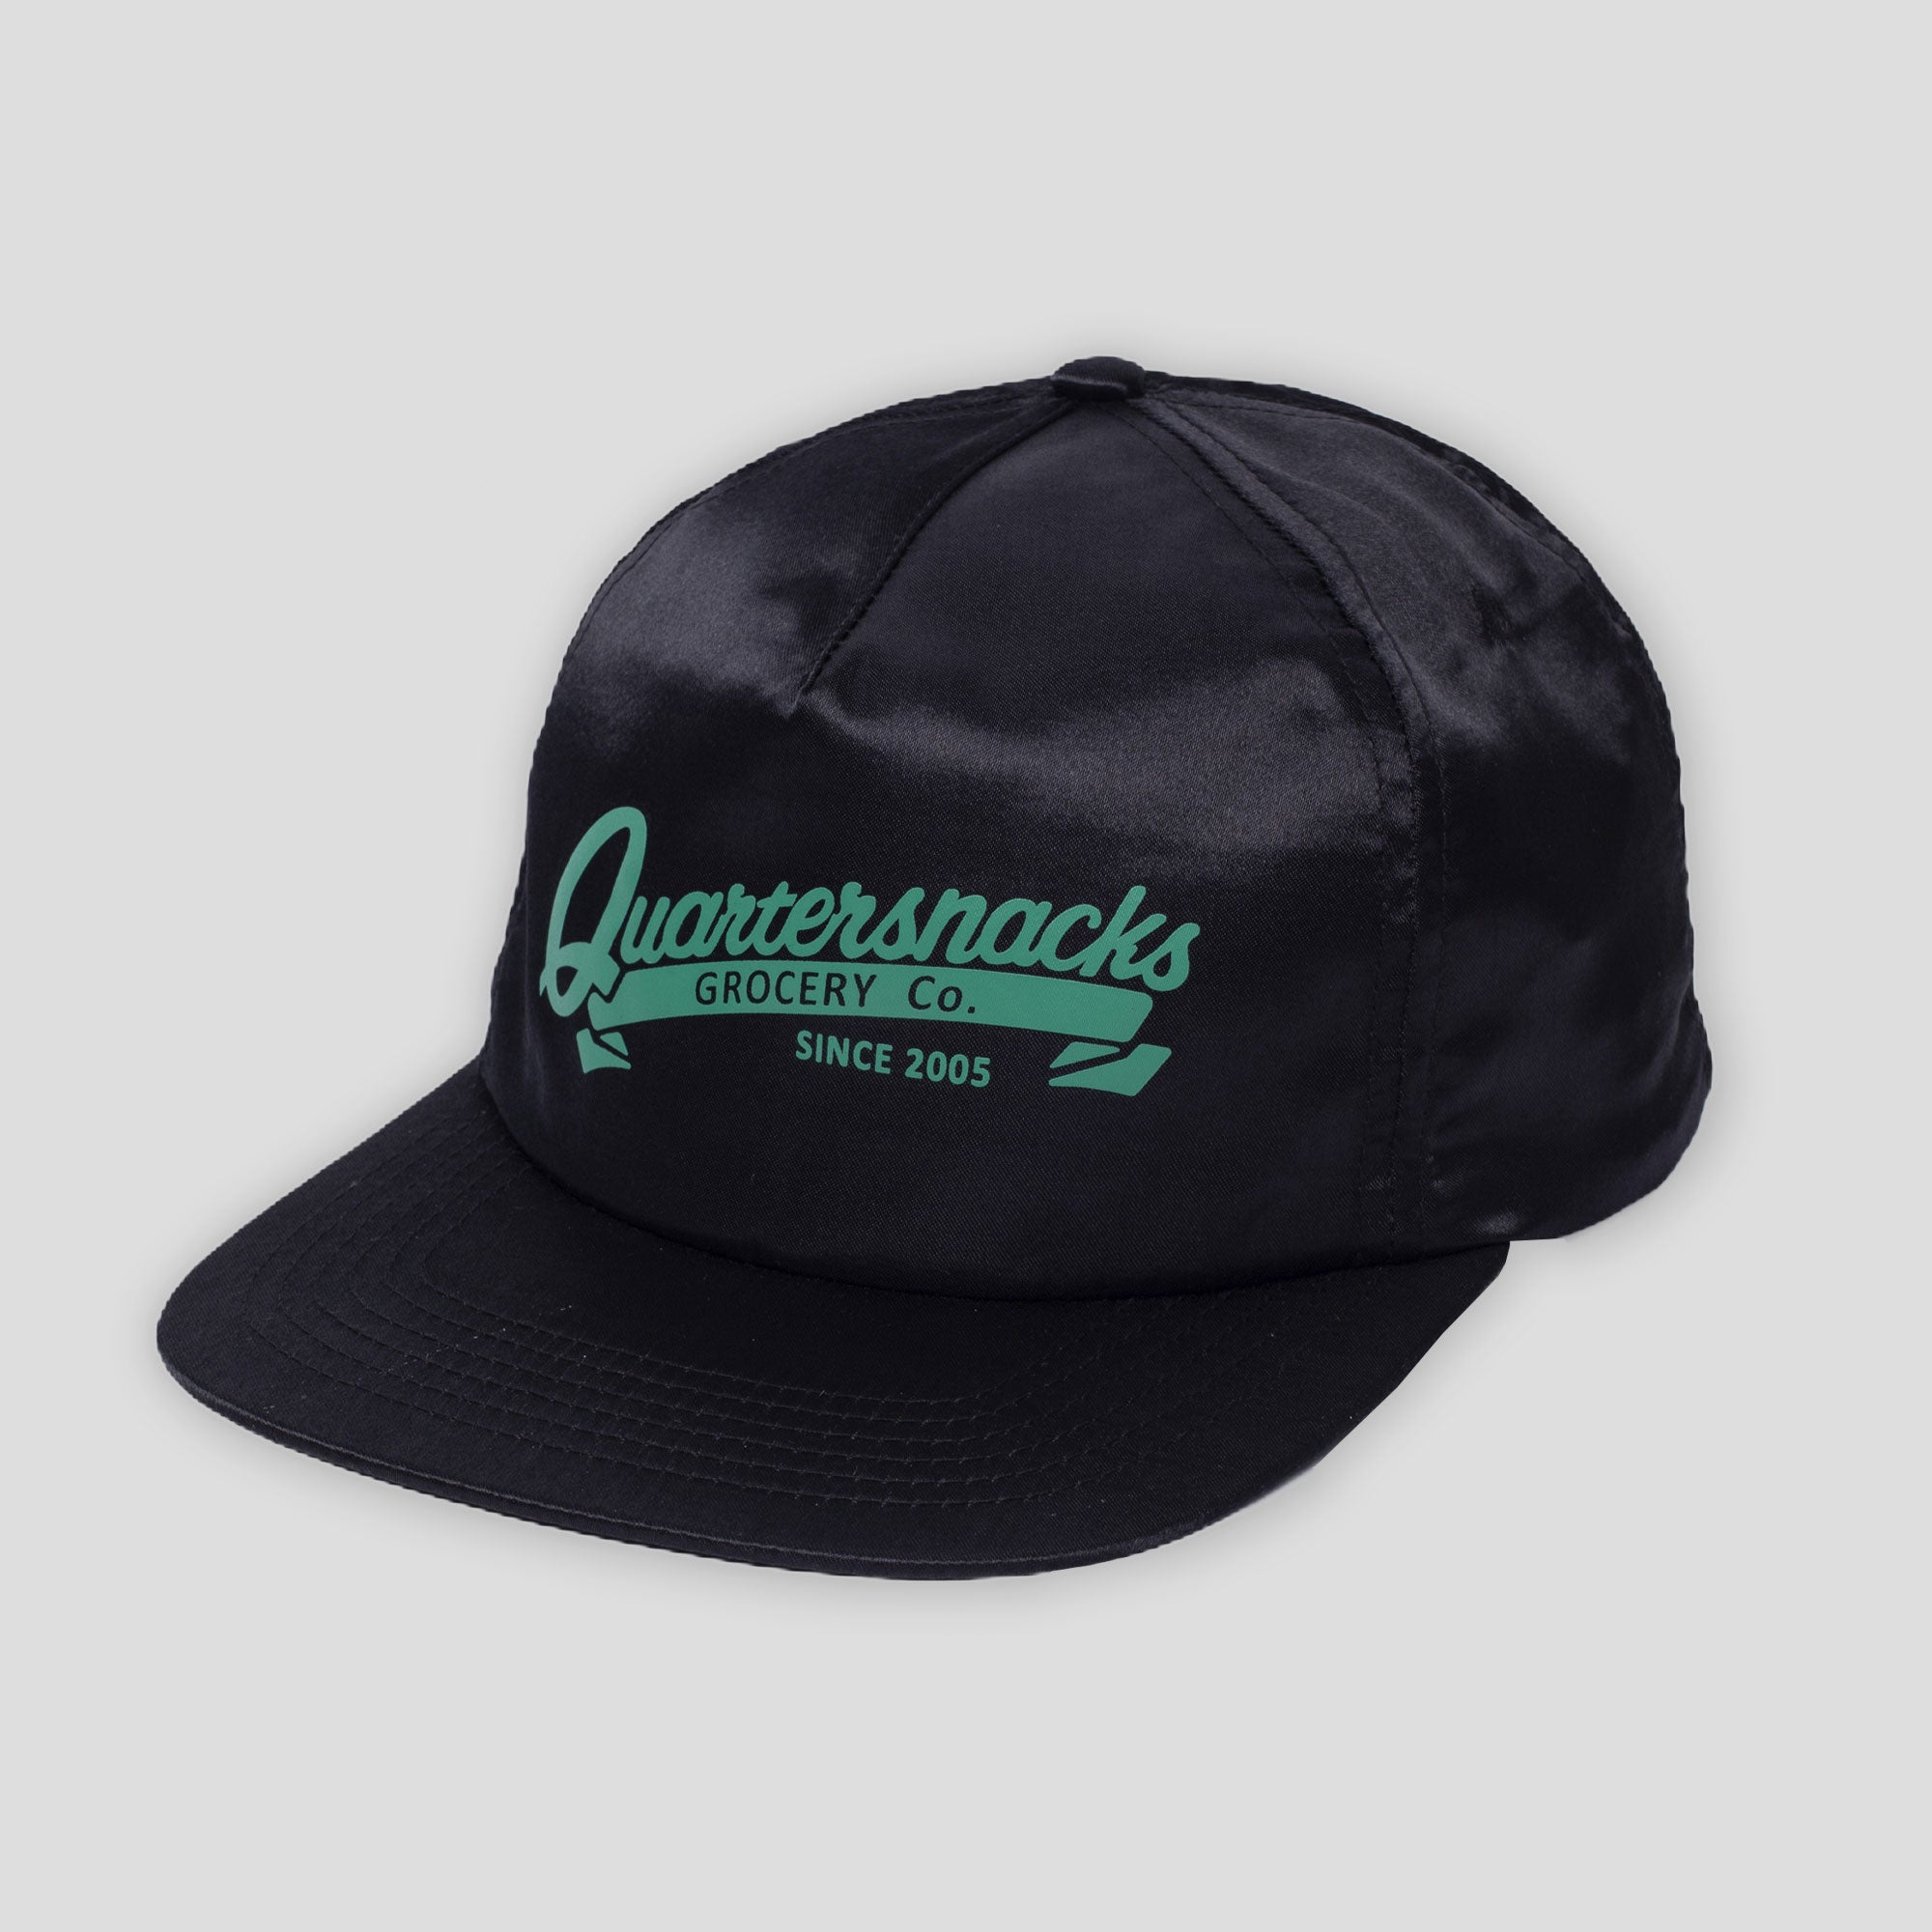 Quartersnacks Grocery Cap - Black